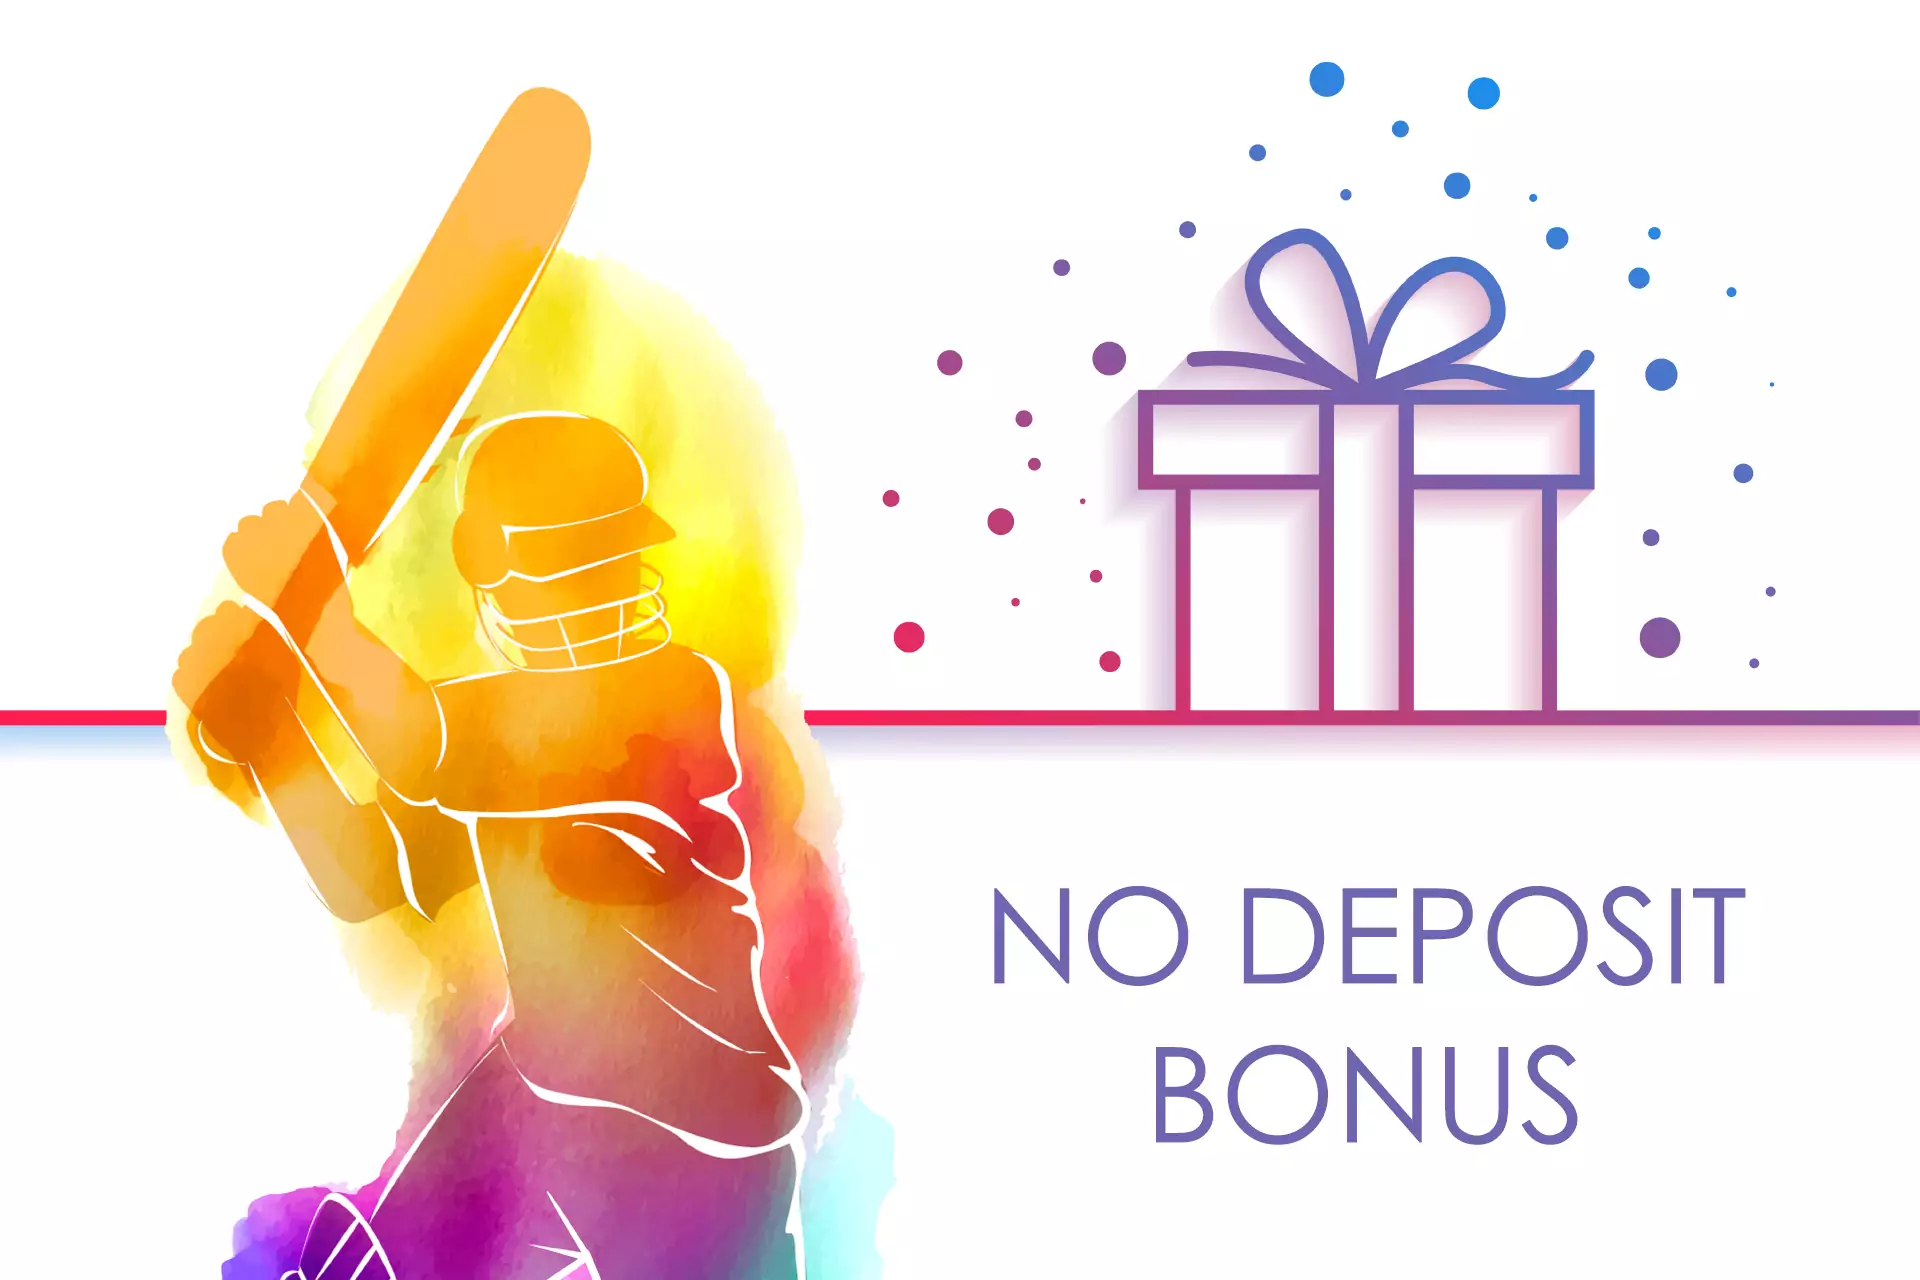 नो डिपॉजिट बोनस आपको क्रिकेट पर दांव लगाते समय असली पैसे का जोखिम नहीं उठाने देता है।